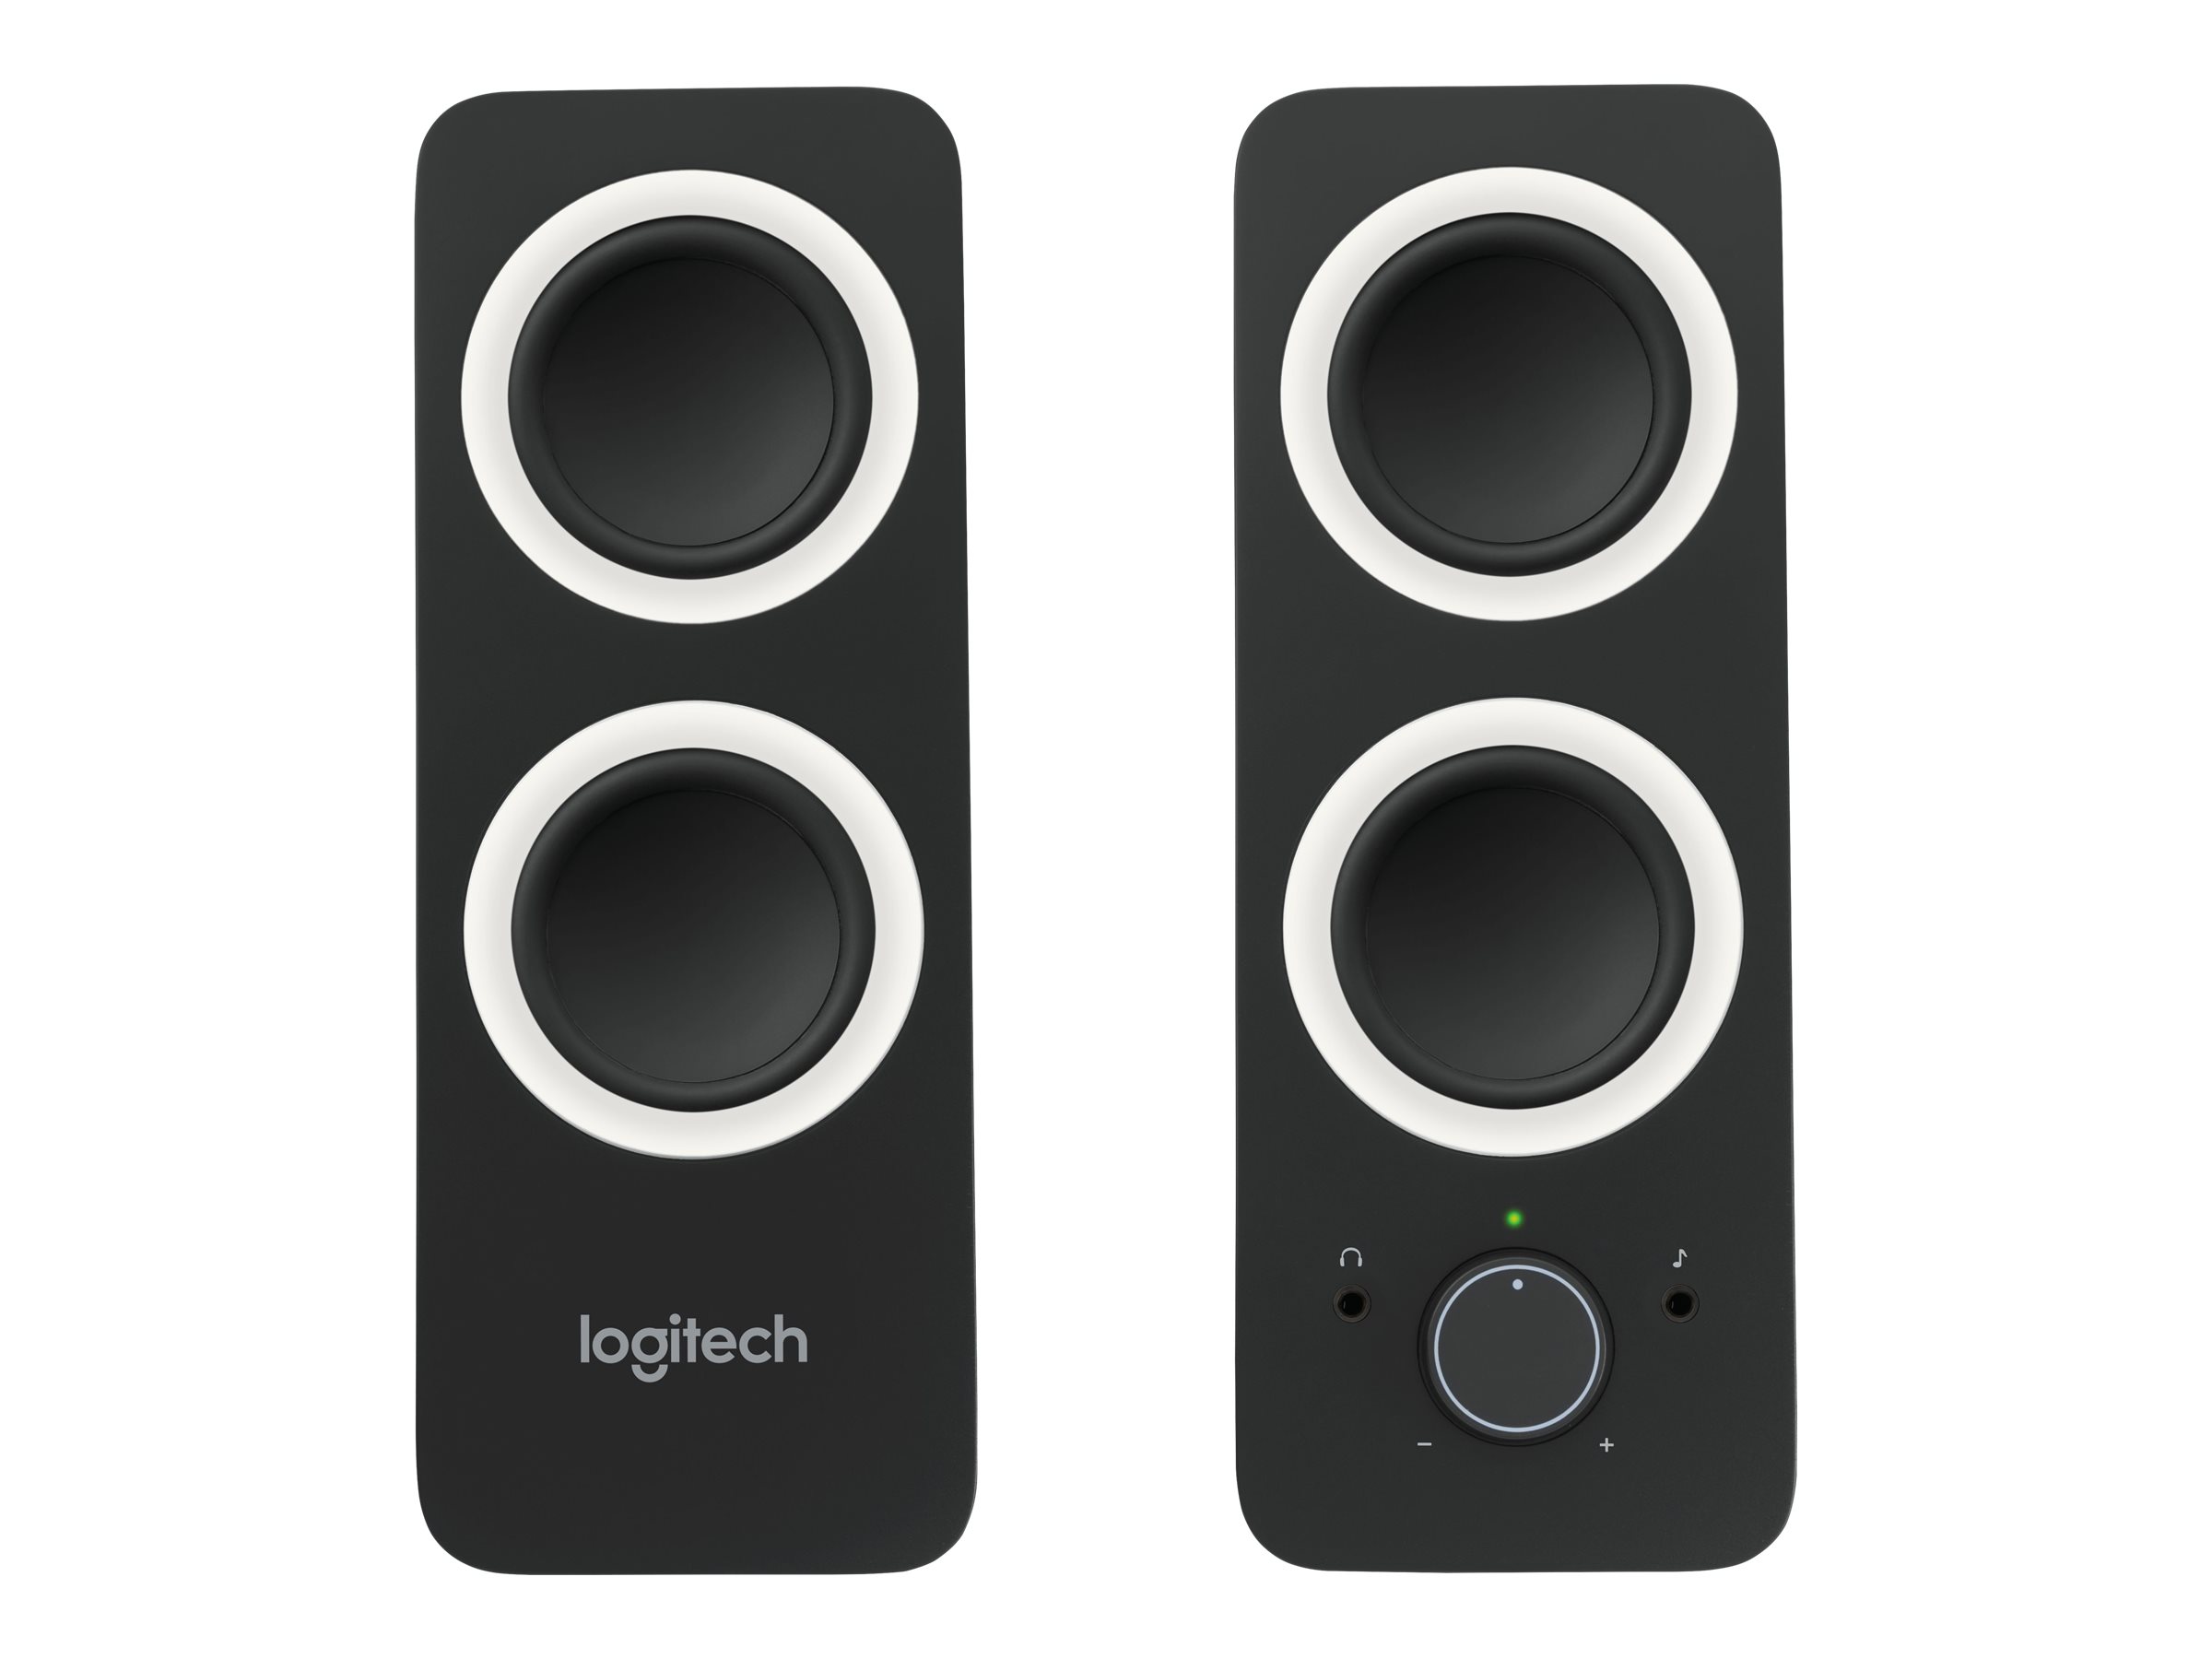 Logitech Z200 - speakers - for PC